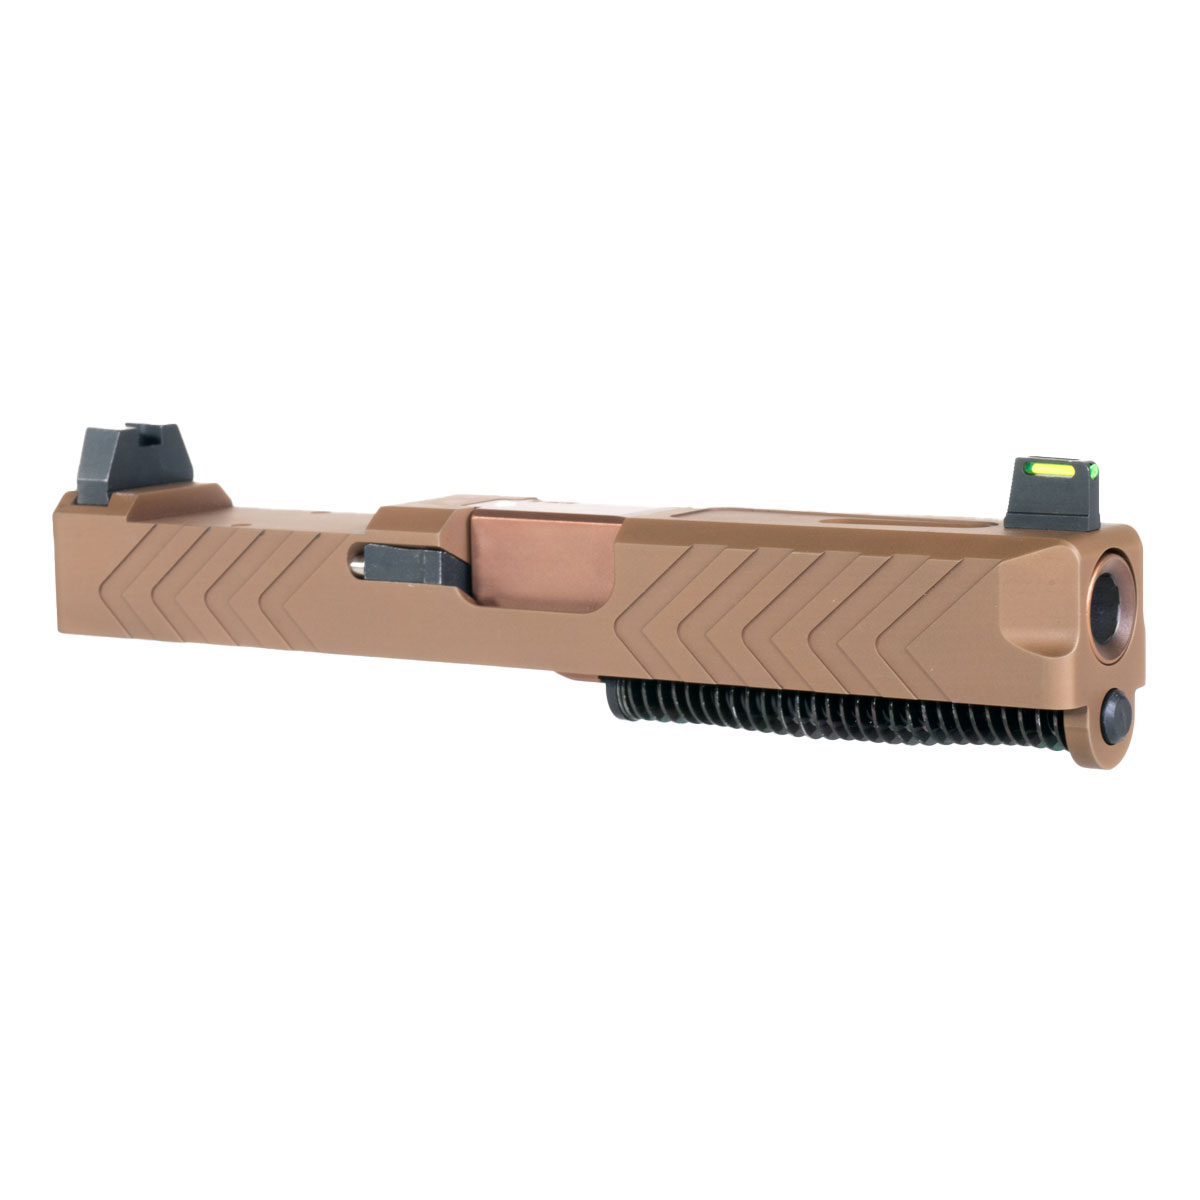 DD 'Woodland Ghost' 9mm Complete Slide Kit - Glock 19 Gen 1-3 Compatible